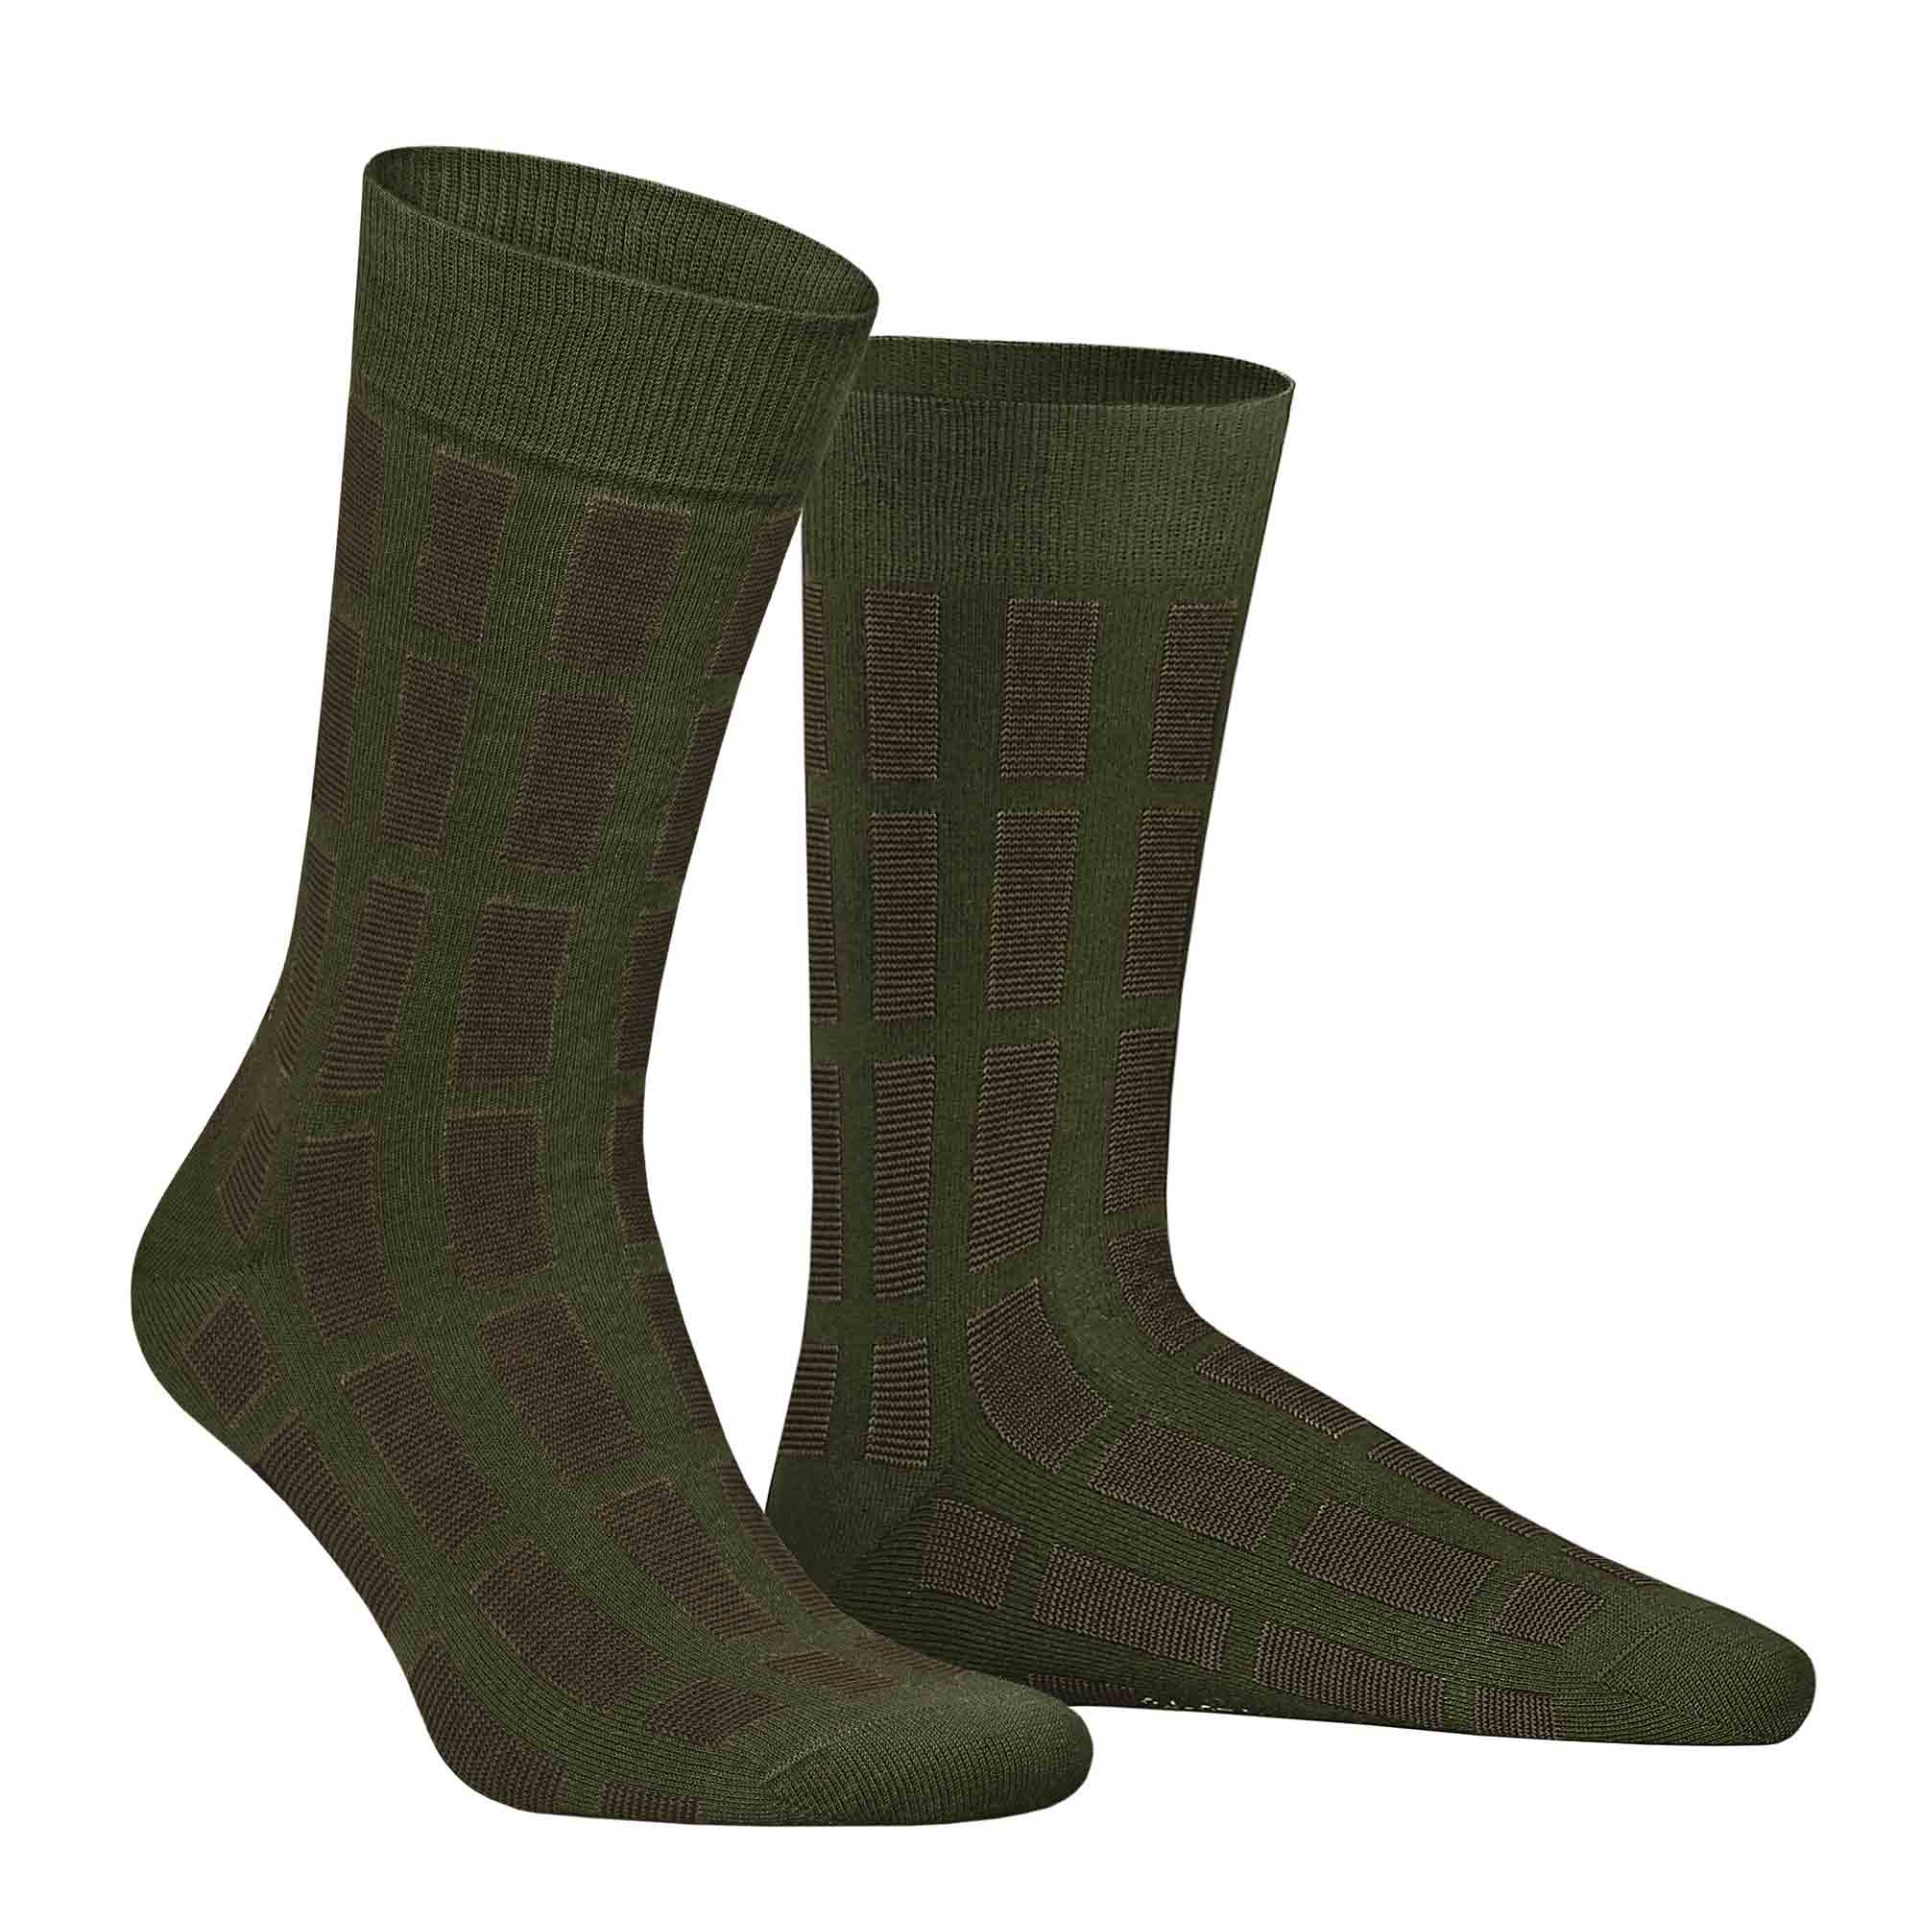 HUDSON Herren PIN -  43/46 - Socken mit Streifen-Muster - Army green 0112 (Grün)